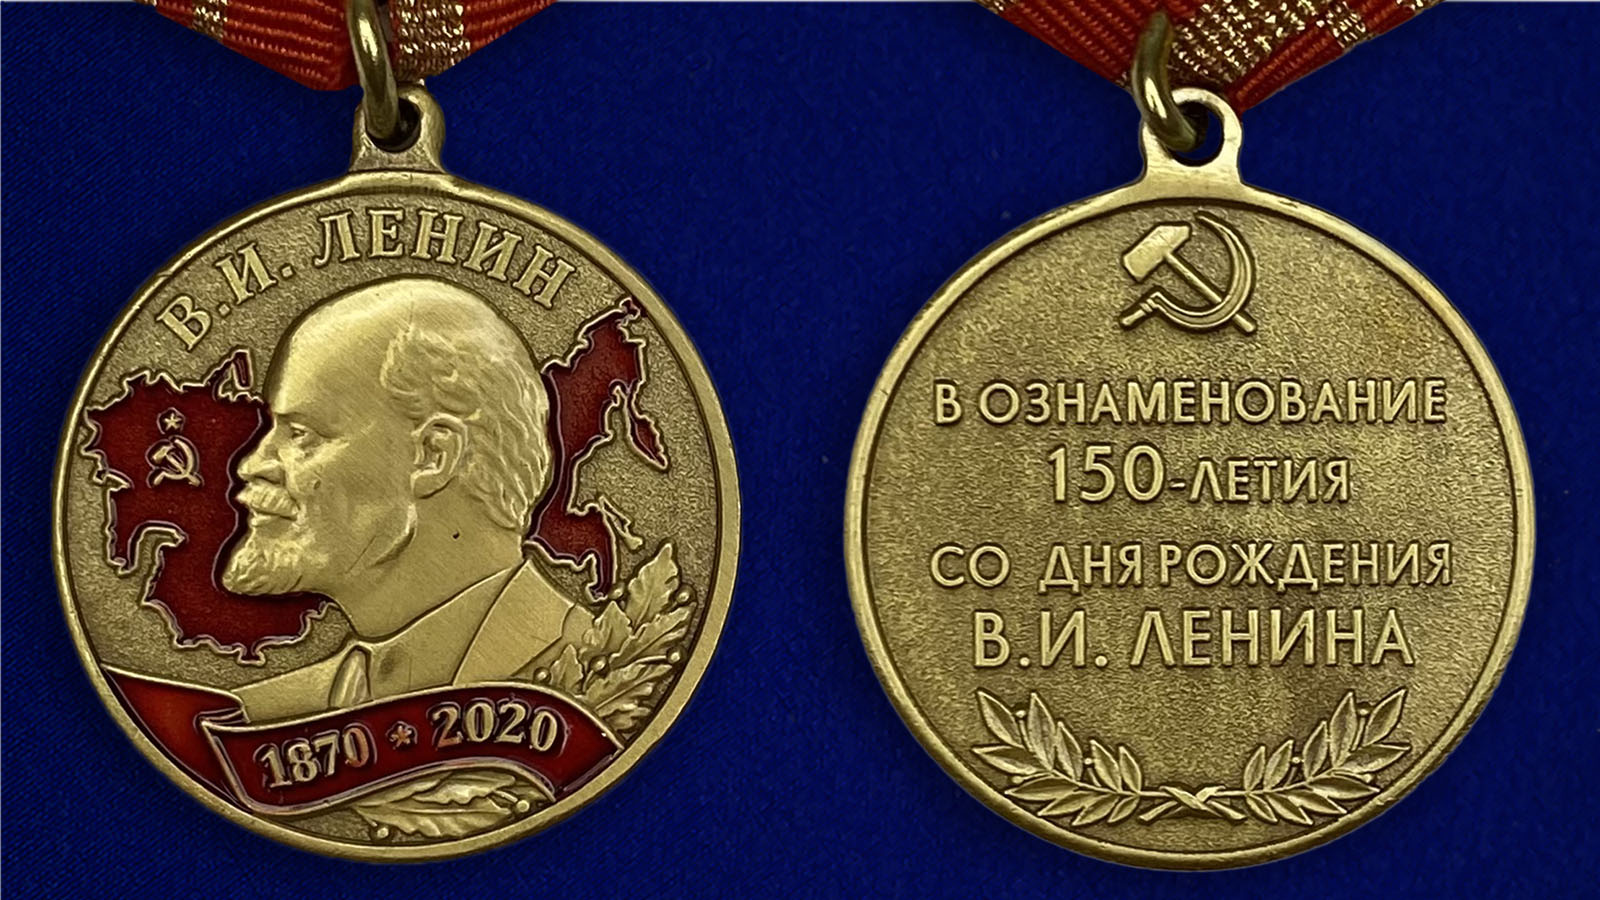 Описание медали "В ознаменование 150-летия со дня рождения В.И. Ленина"